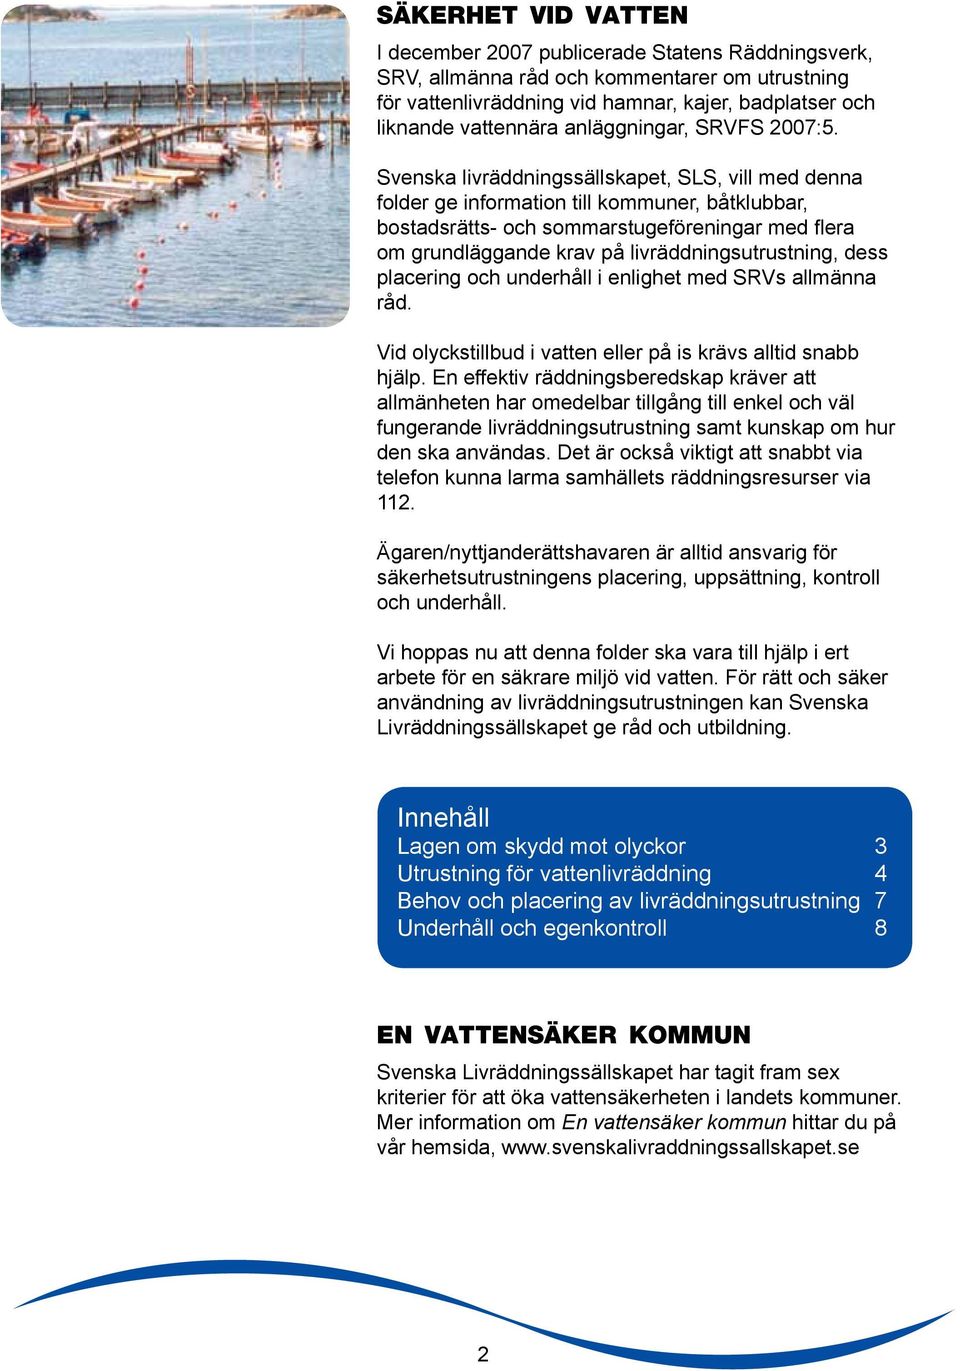 Svenska livräddningssällskapet, SLS, vill med denna folder ge information till kommuner, båtklubbar, bostadsrätts- och sommarstugeföreningar med flera om grundläggande krav på livräddningsutrustning,